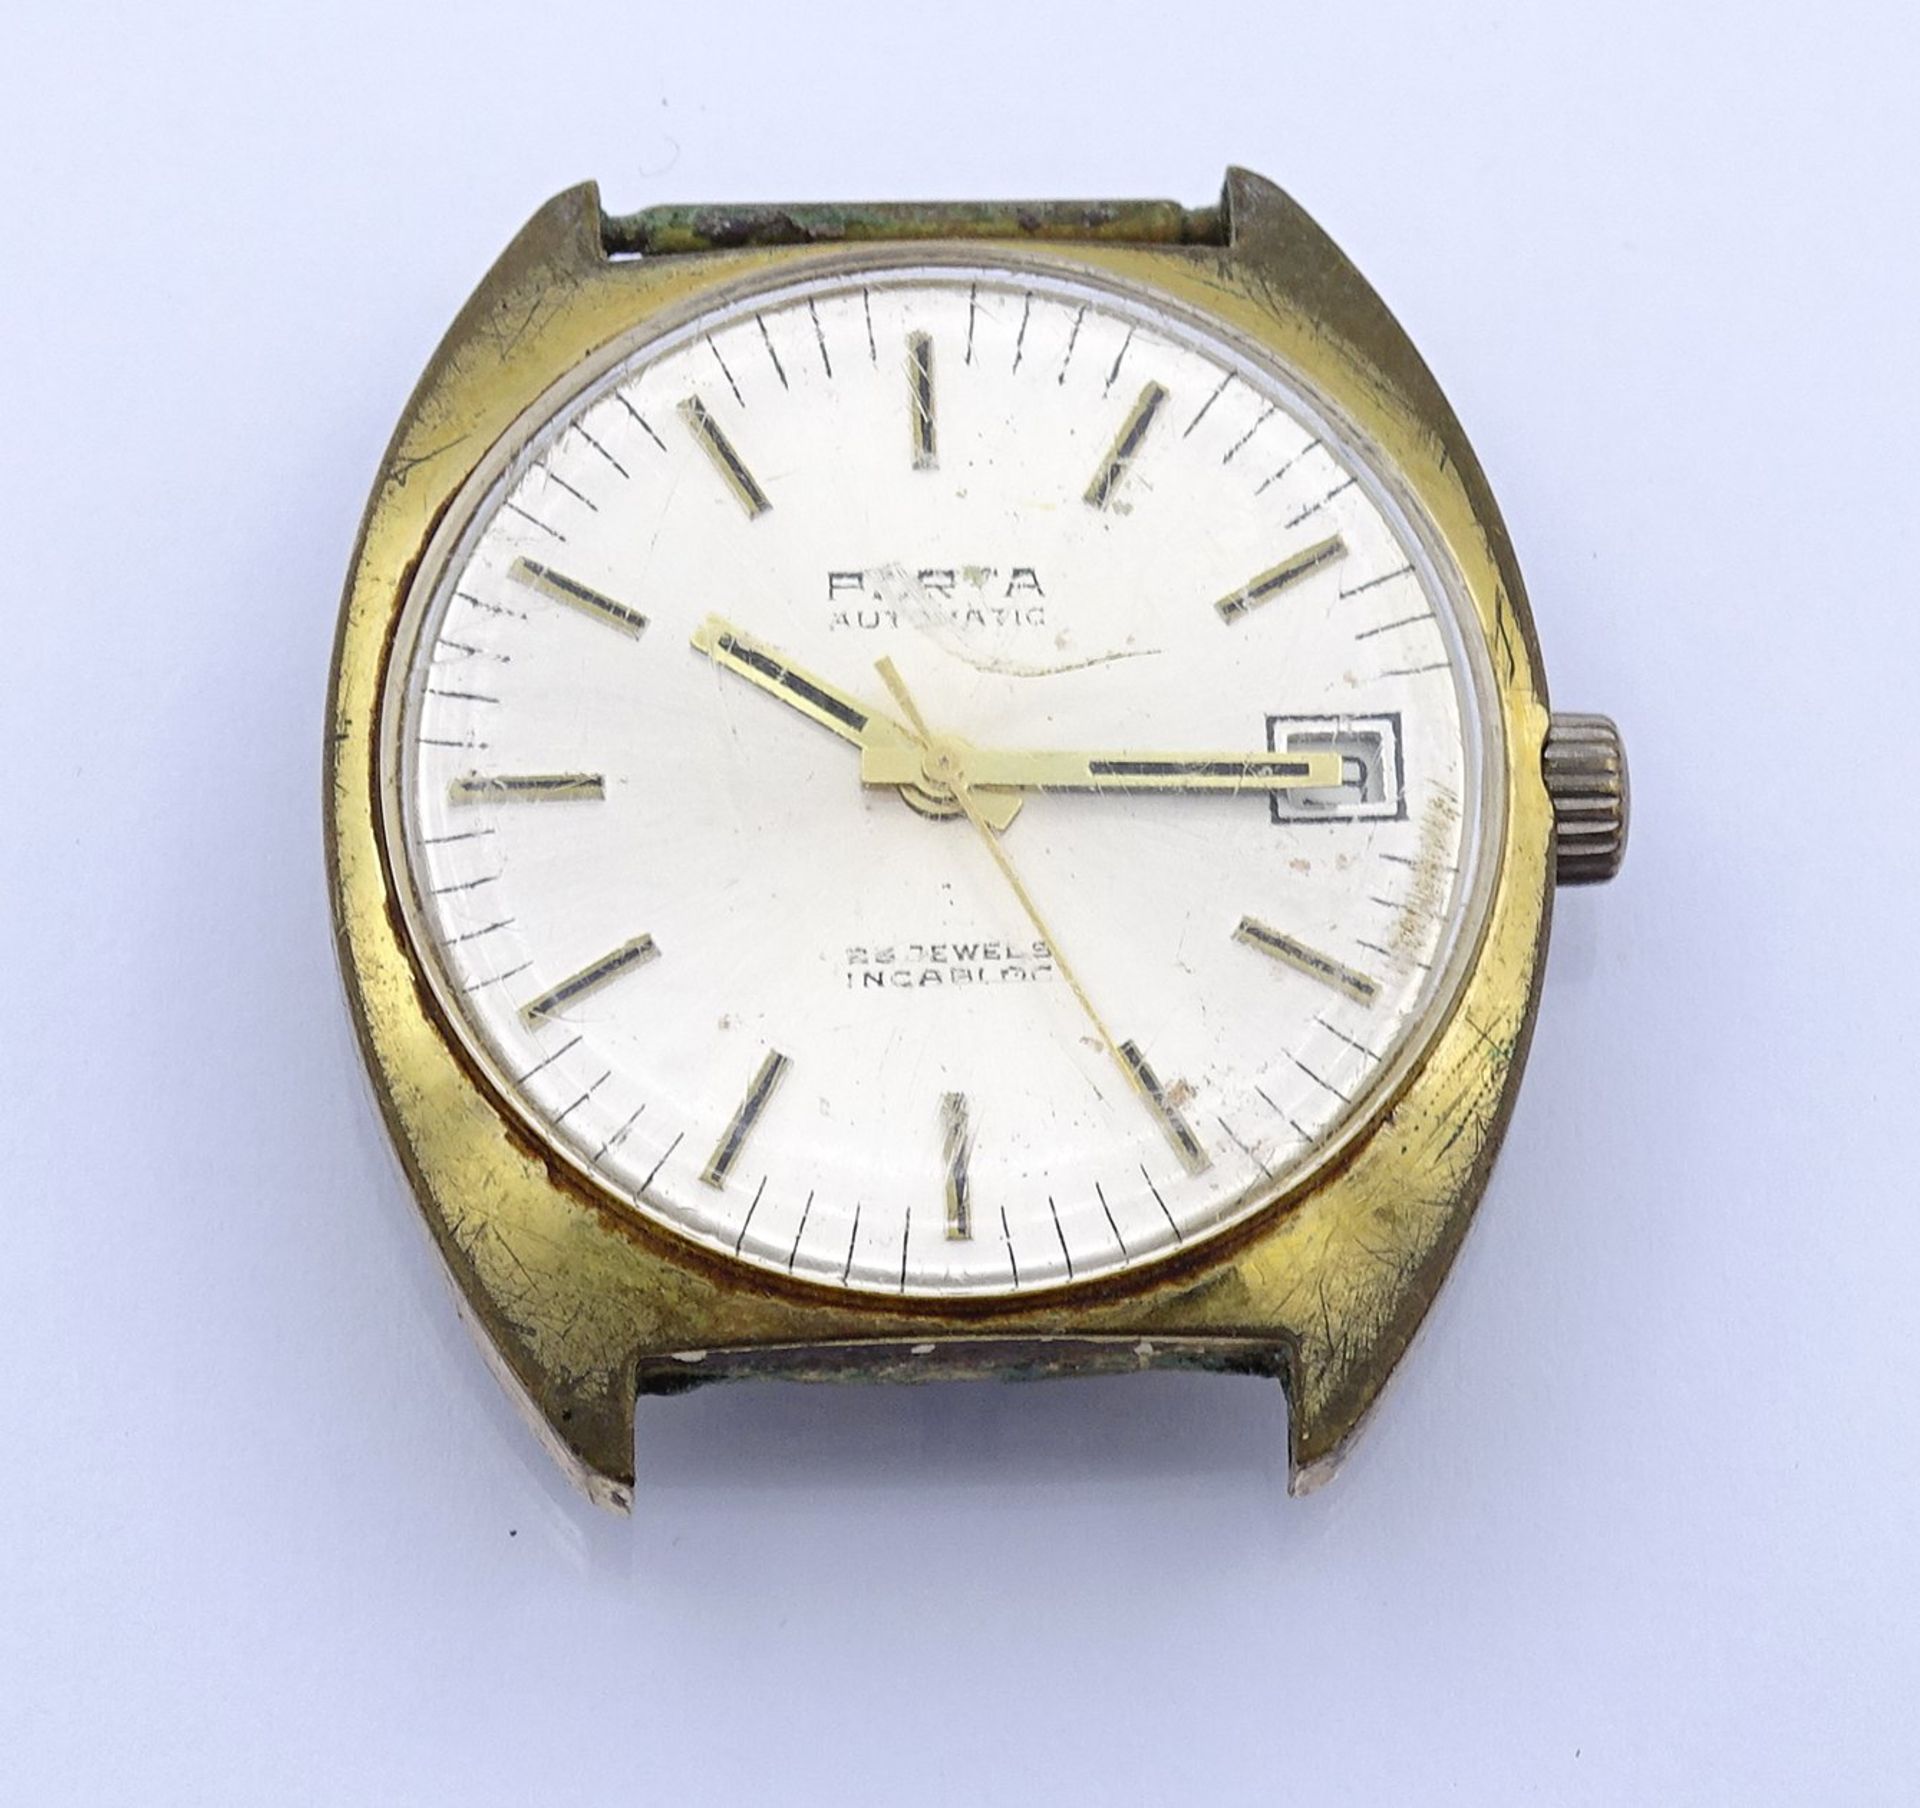 Armbanduhr " Porta" , Automatikwerk, Werk läuft , D. 34,7mm, ohne Band, Alters- und Gebrauchsspuren